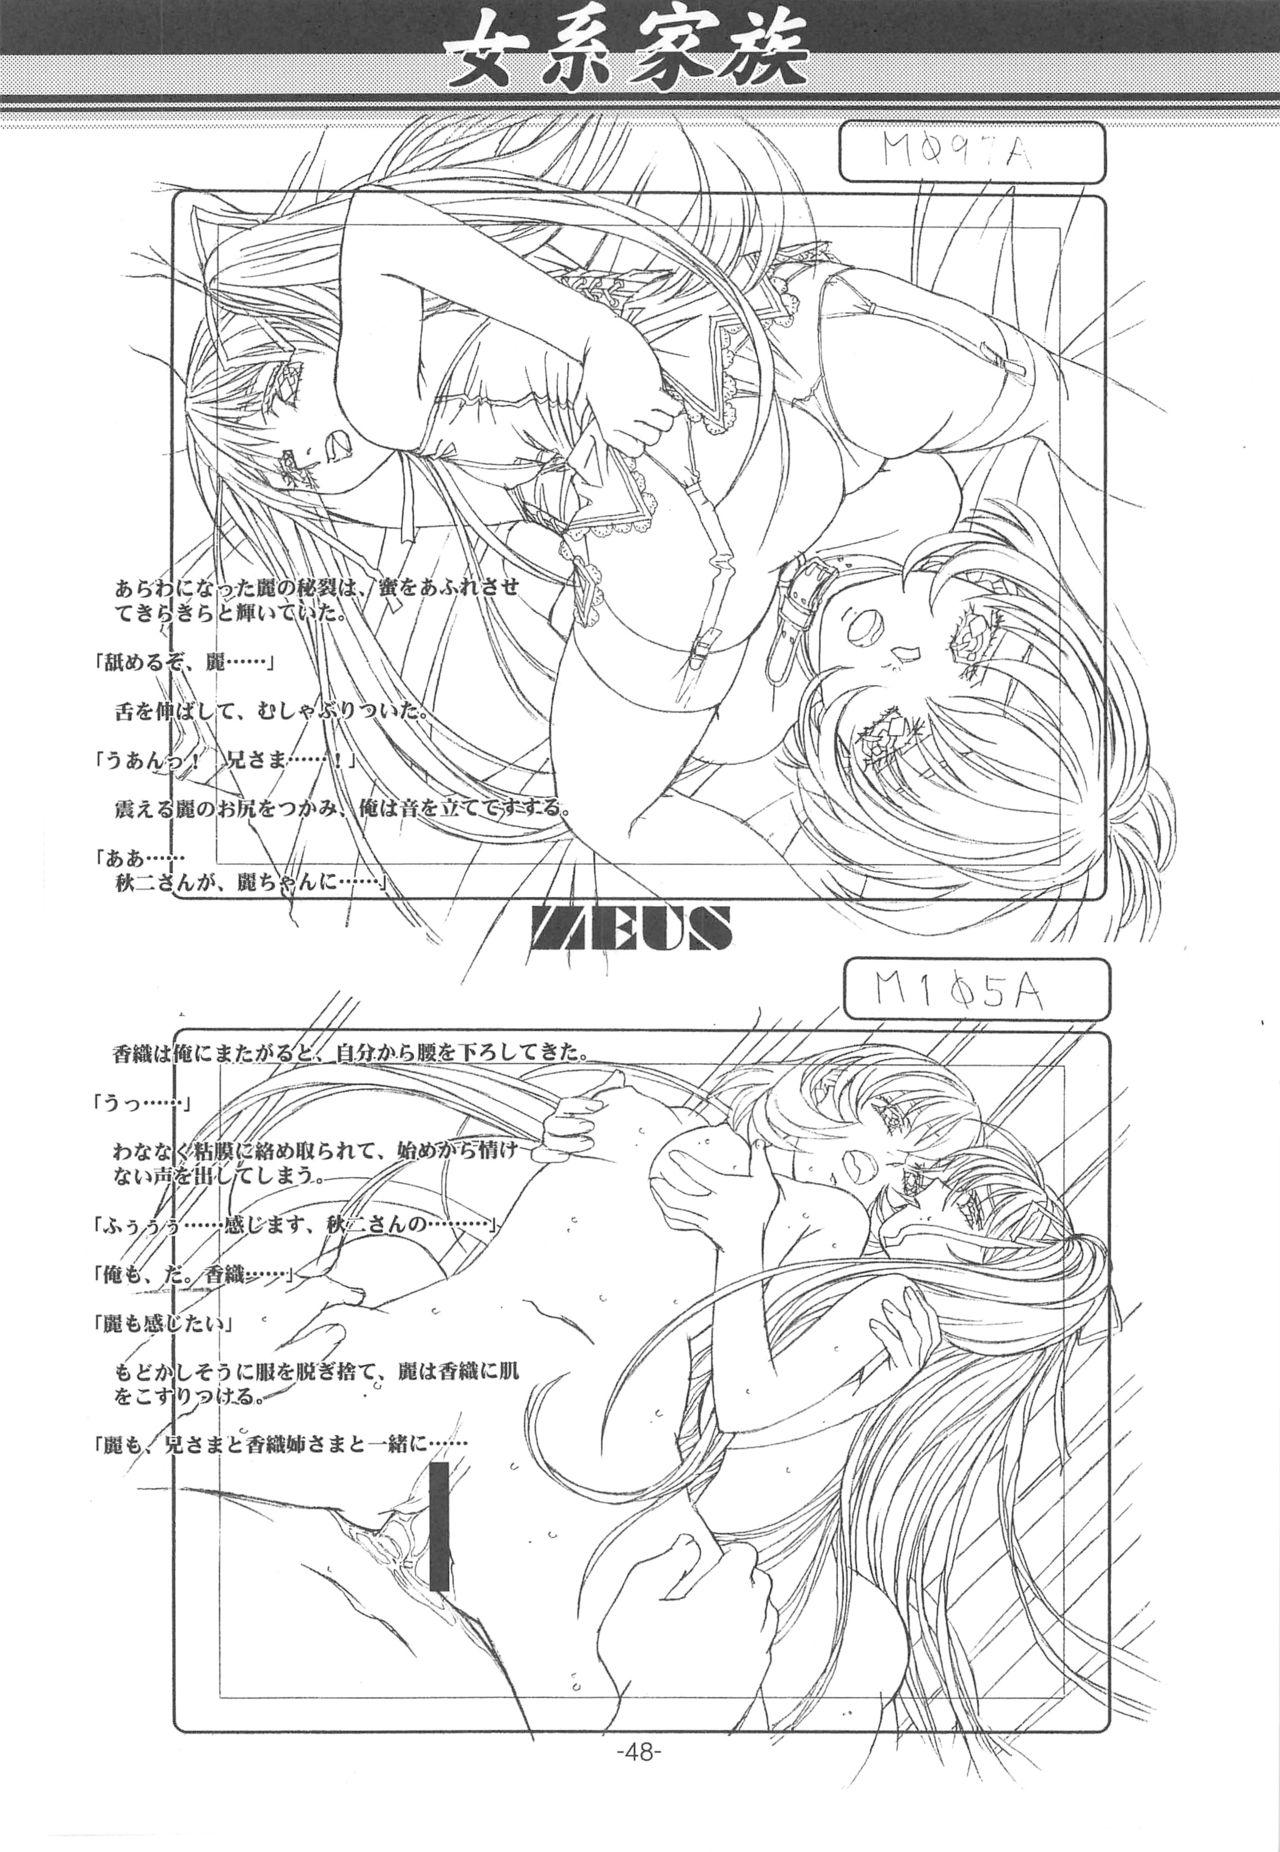 Otonano Do-wa Vol. 14 & Jokei Kazoku Senga shuu 46